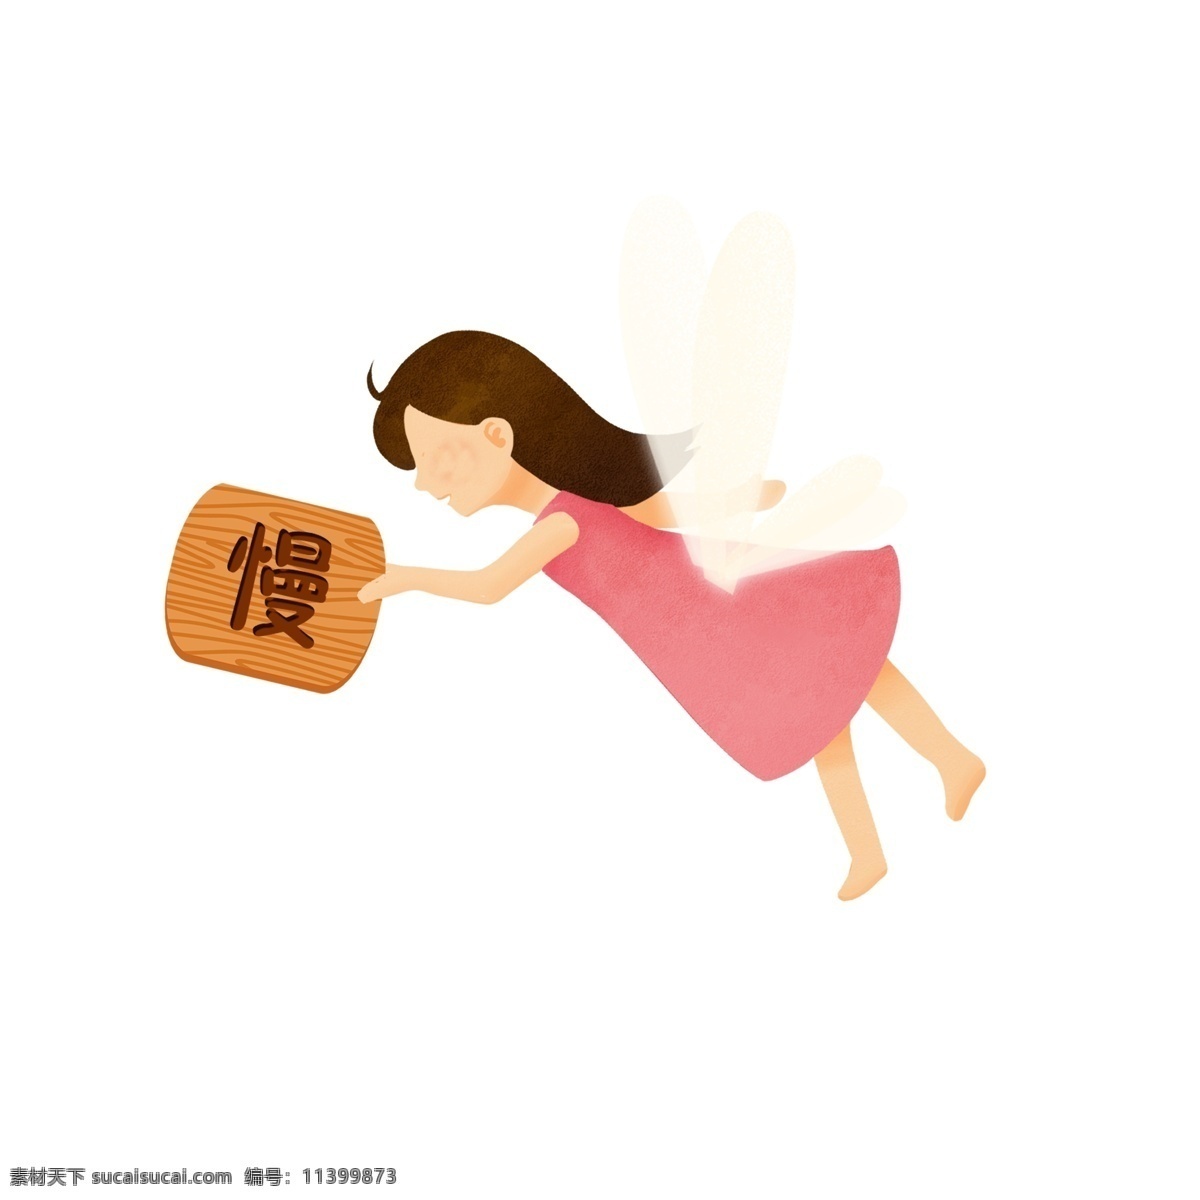 卡通 安全 出行 慢行 指示牌 小 天使 插画 翅膀 人物 安全出行 精灵 安全提示 慢行指示 小天使 女孩 儿童